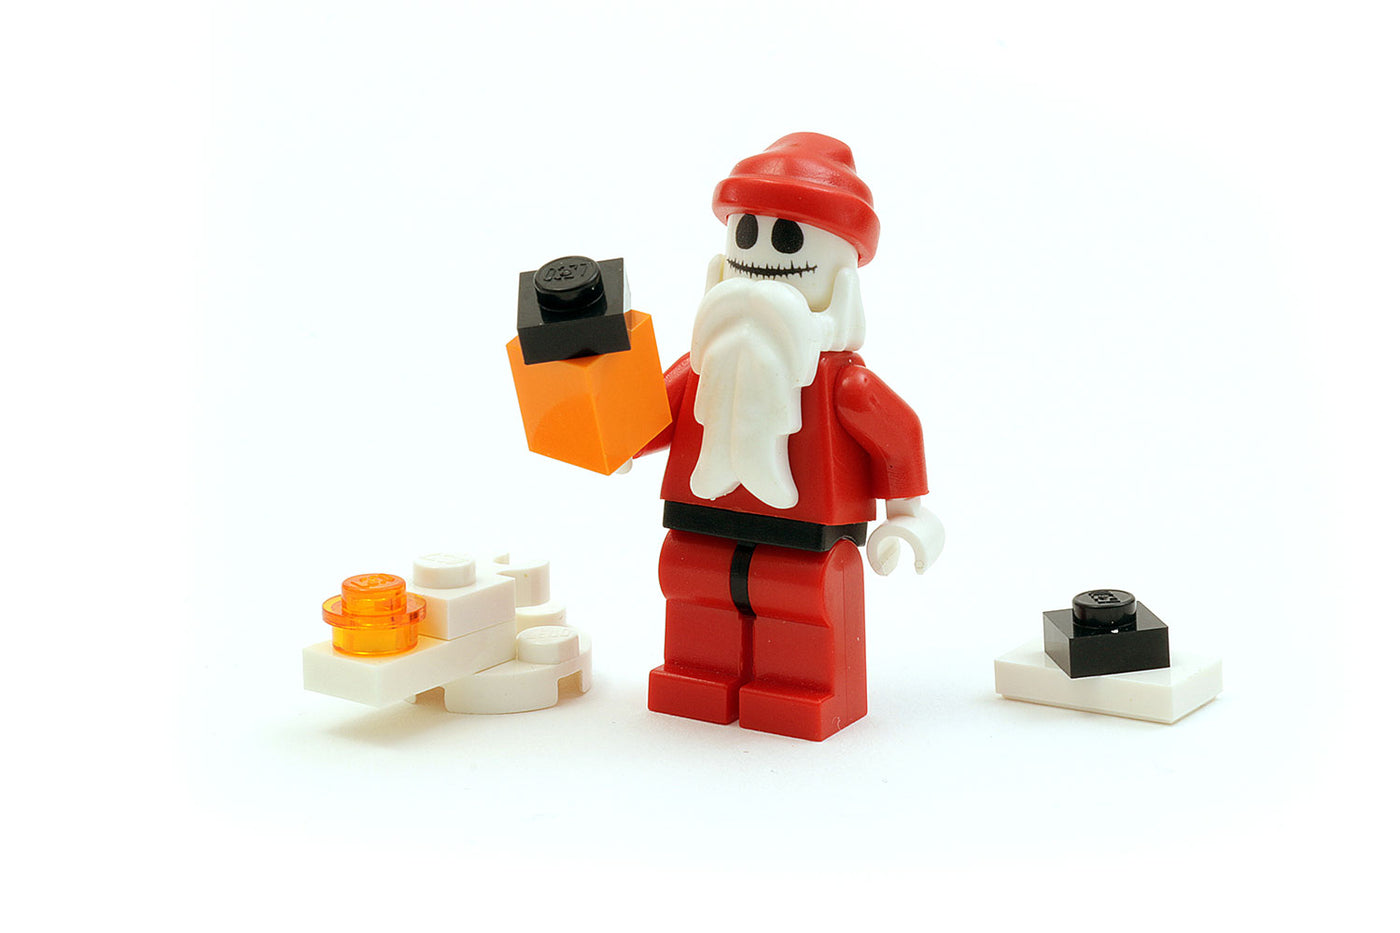 Nightmare Before Christmas  Lego halloween, Lego minifigure display, Nightmare  before christmas